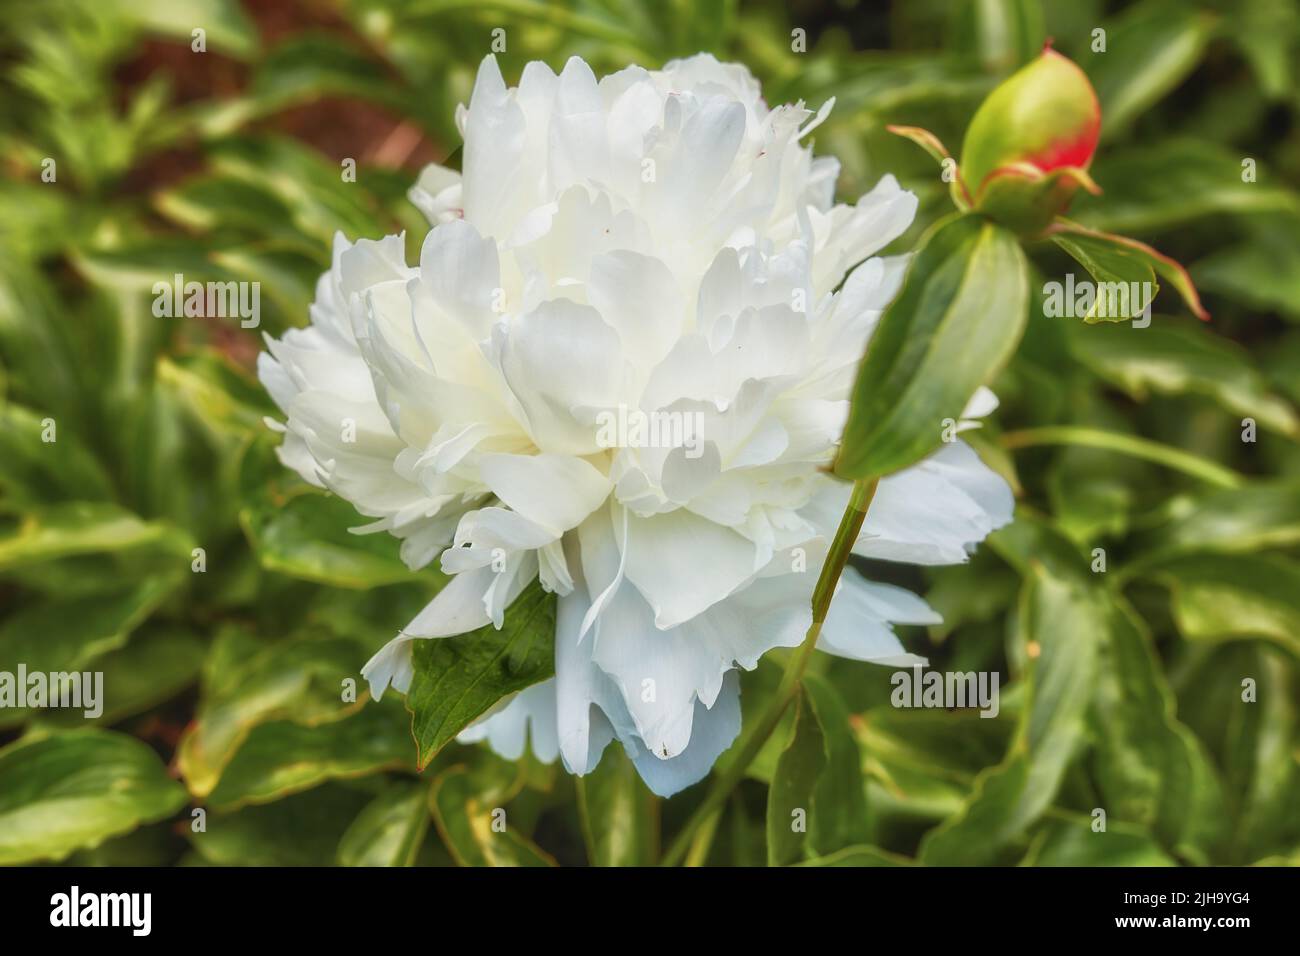 Peony shirley tempio o paeonia lactiflora che cresce in un cortile verde o giardino contro uno sfondo naturale. Splendide piante fiorite Foto Stock